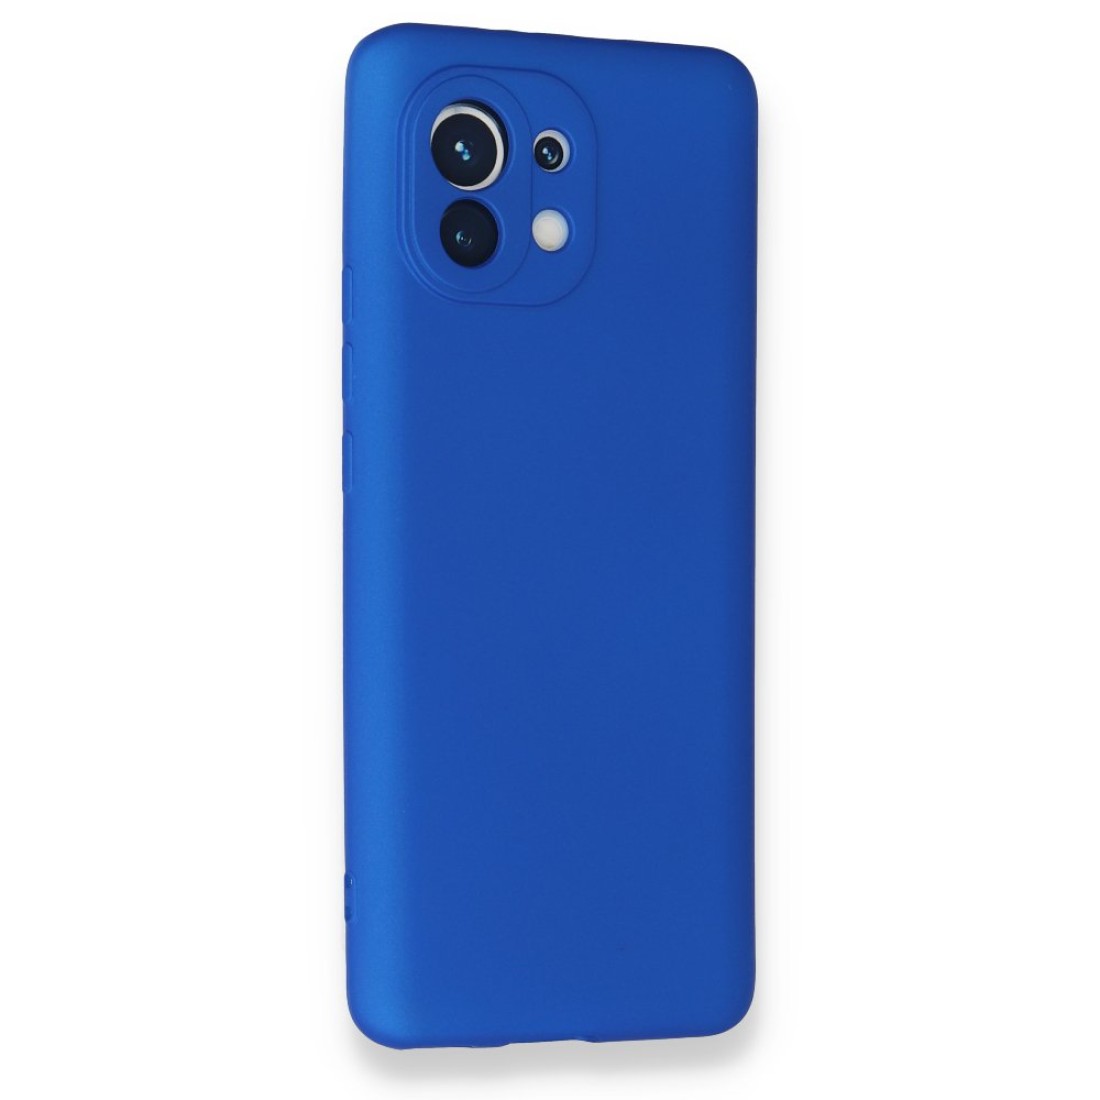 Xiaomi Mi 11 Kılıf Premium Rubber Silikon - Mavi